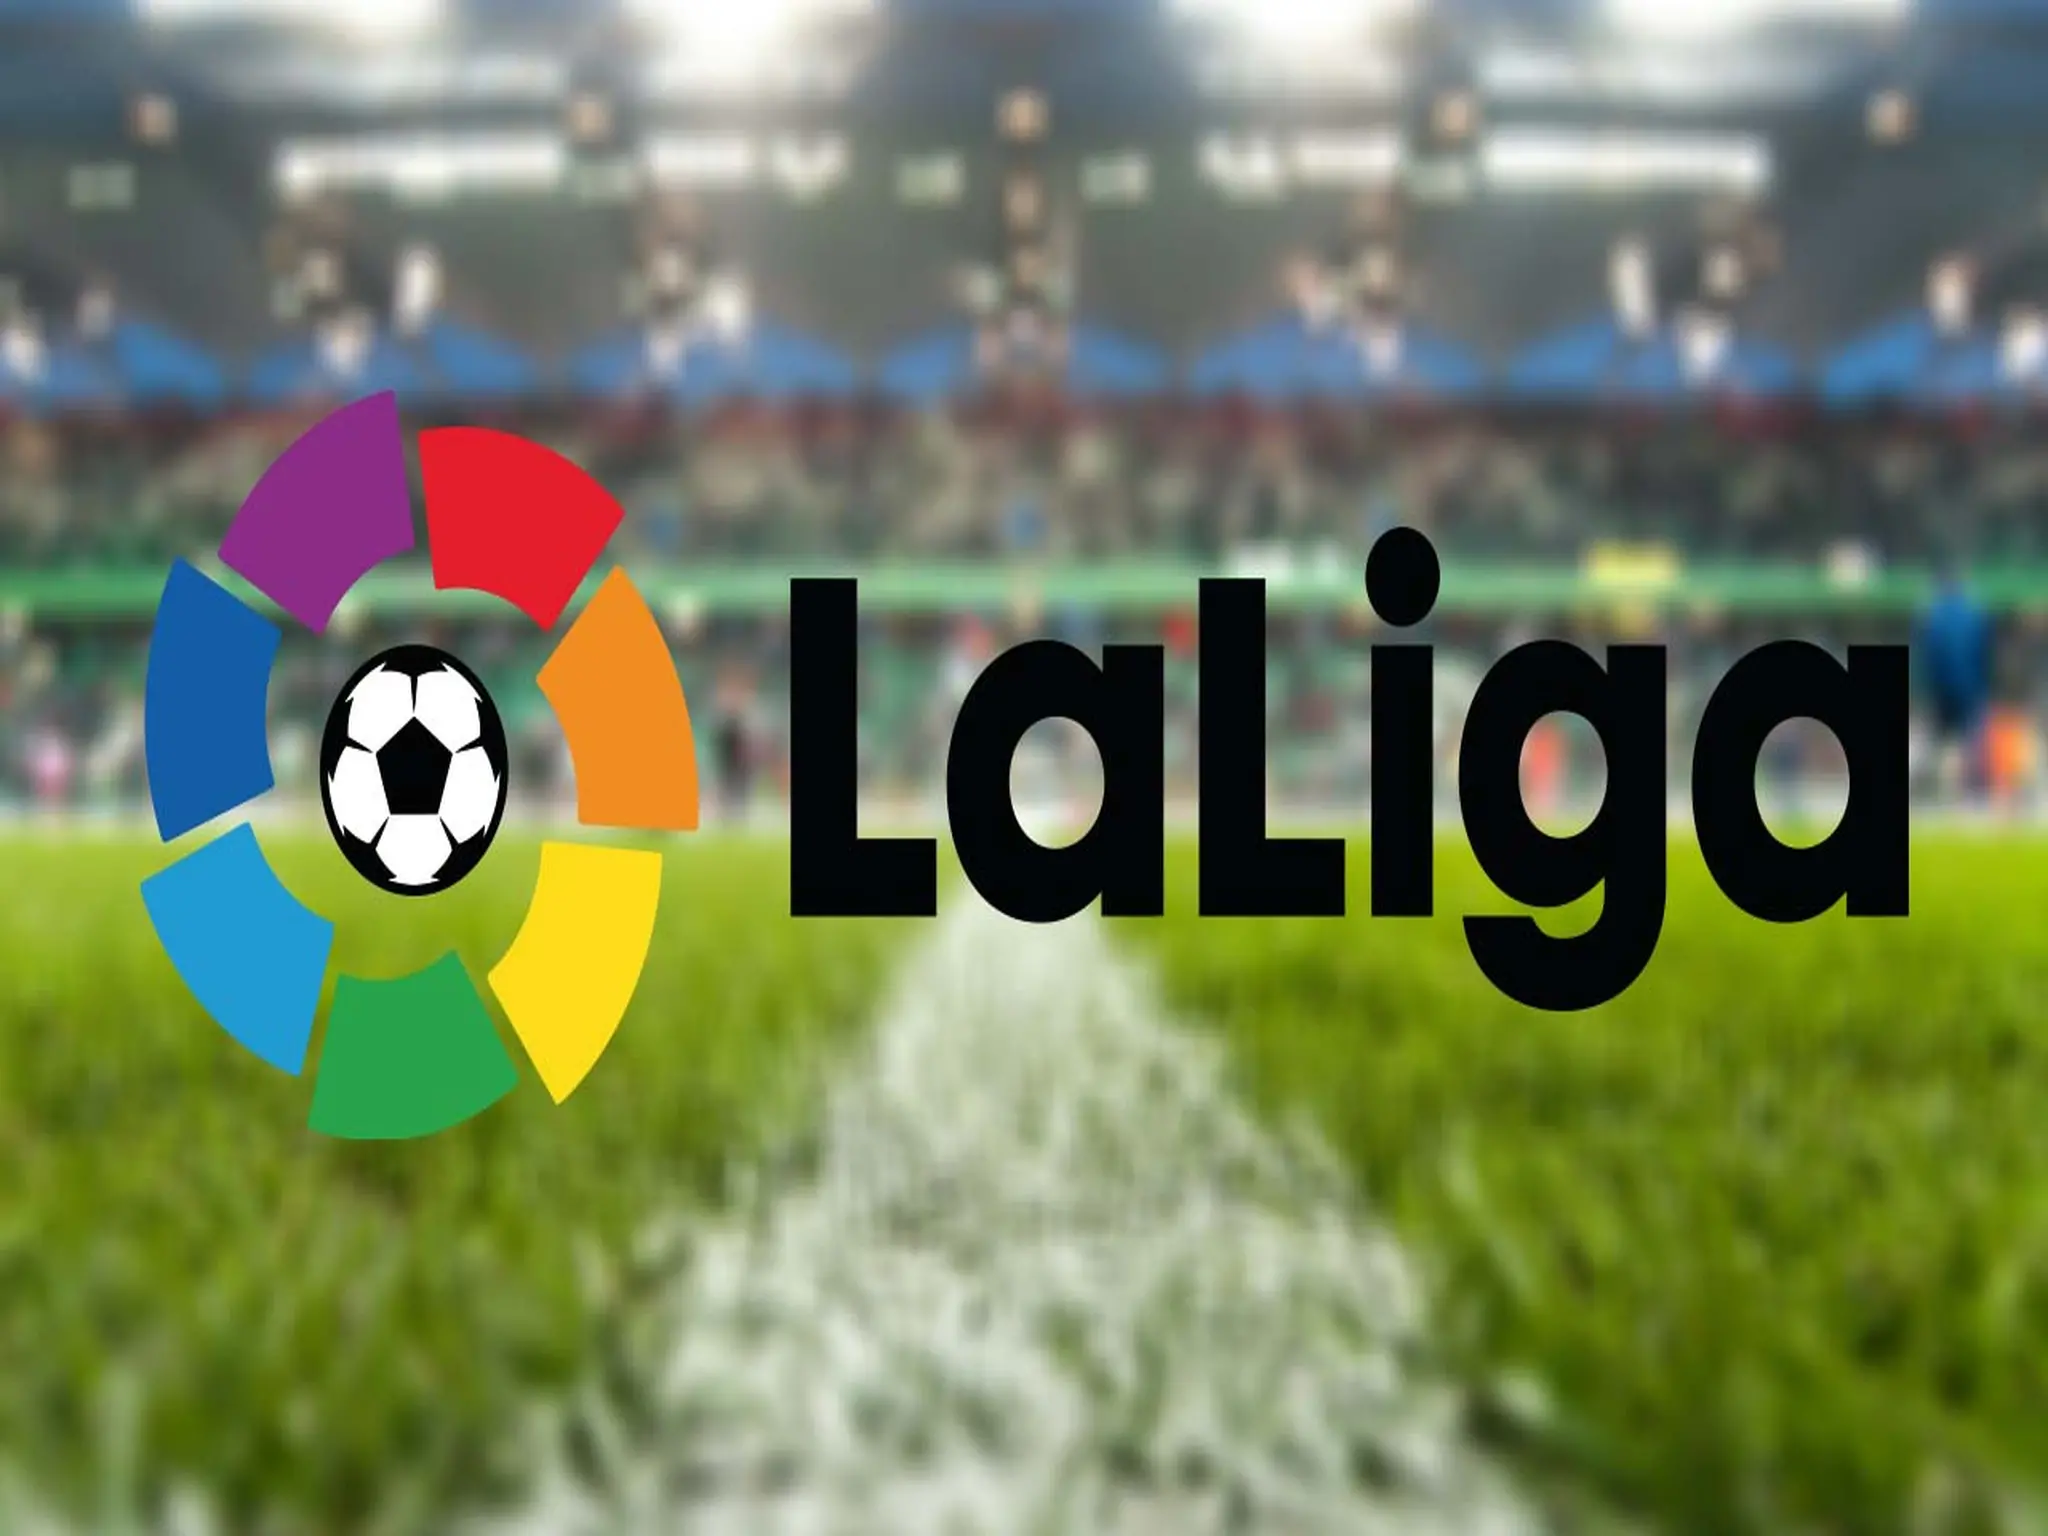 بعد فوز برشلونة اليوم.. جدول ترتيب الدوري الإسباني "لا ليغا" تحديث اليوم الجمعة 22 أبريل 2022